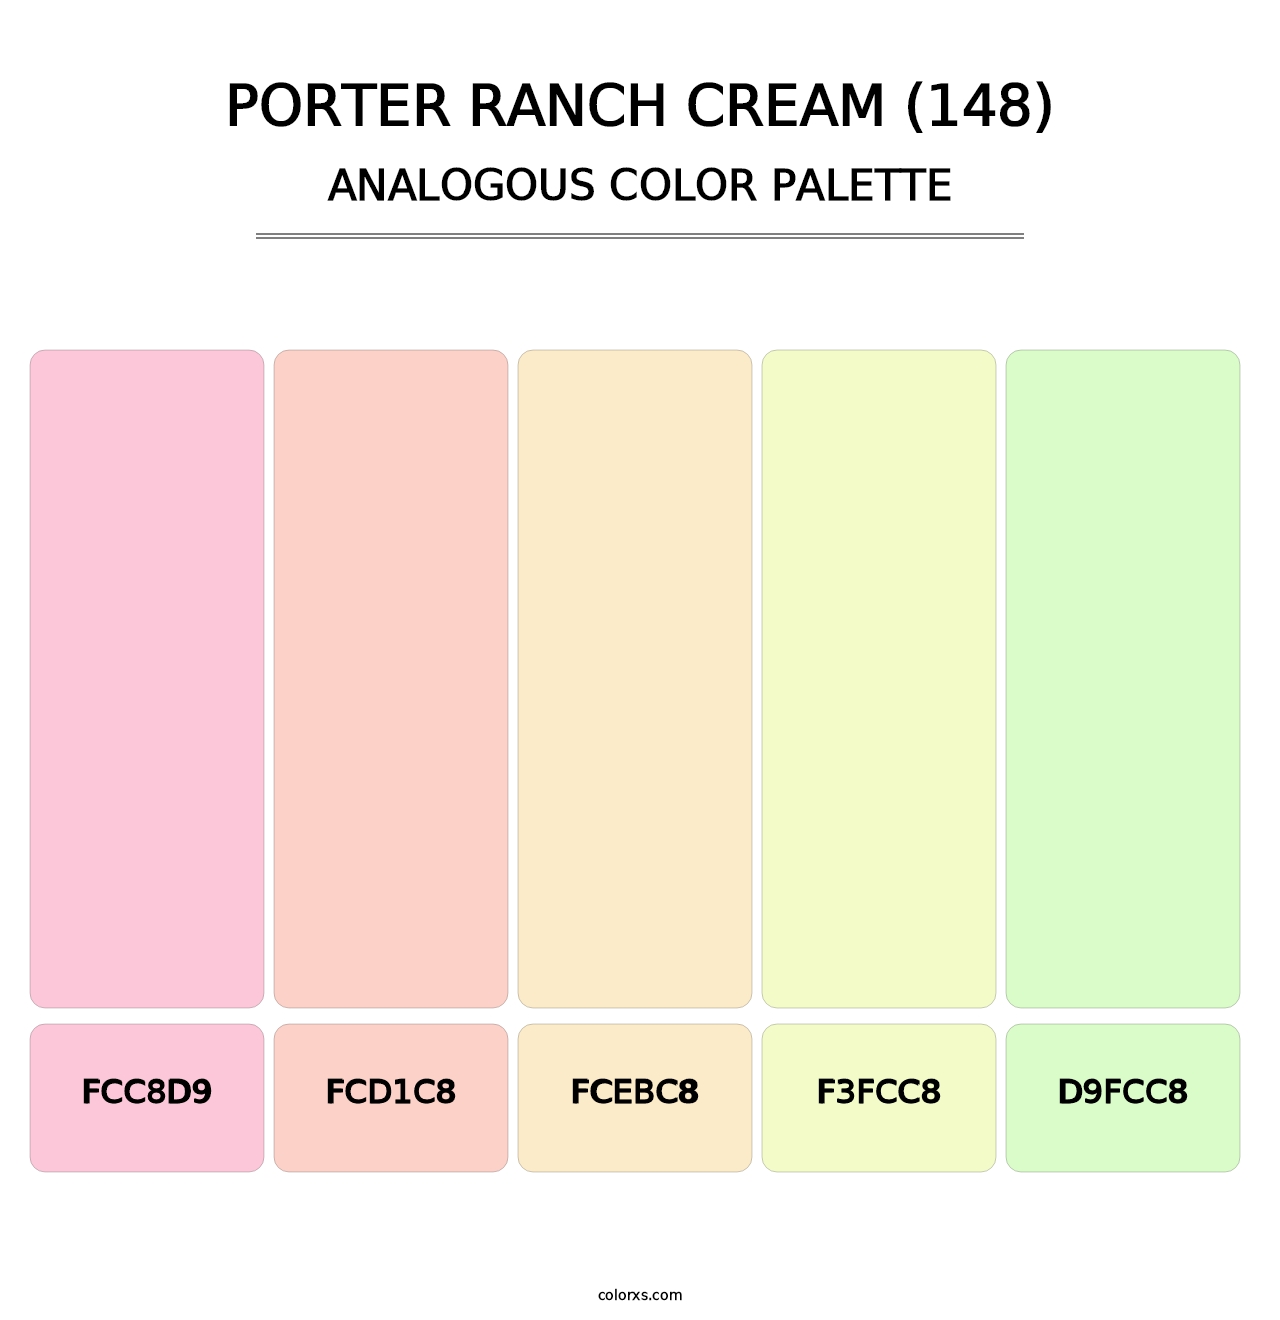 Porter Ranch Cream (148) - Analogous Color Palette